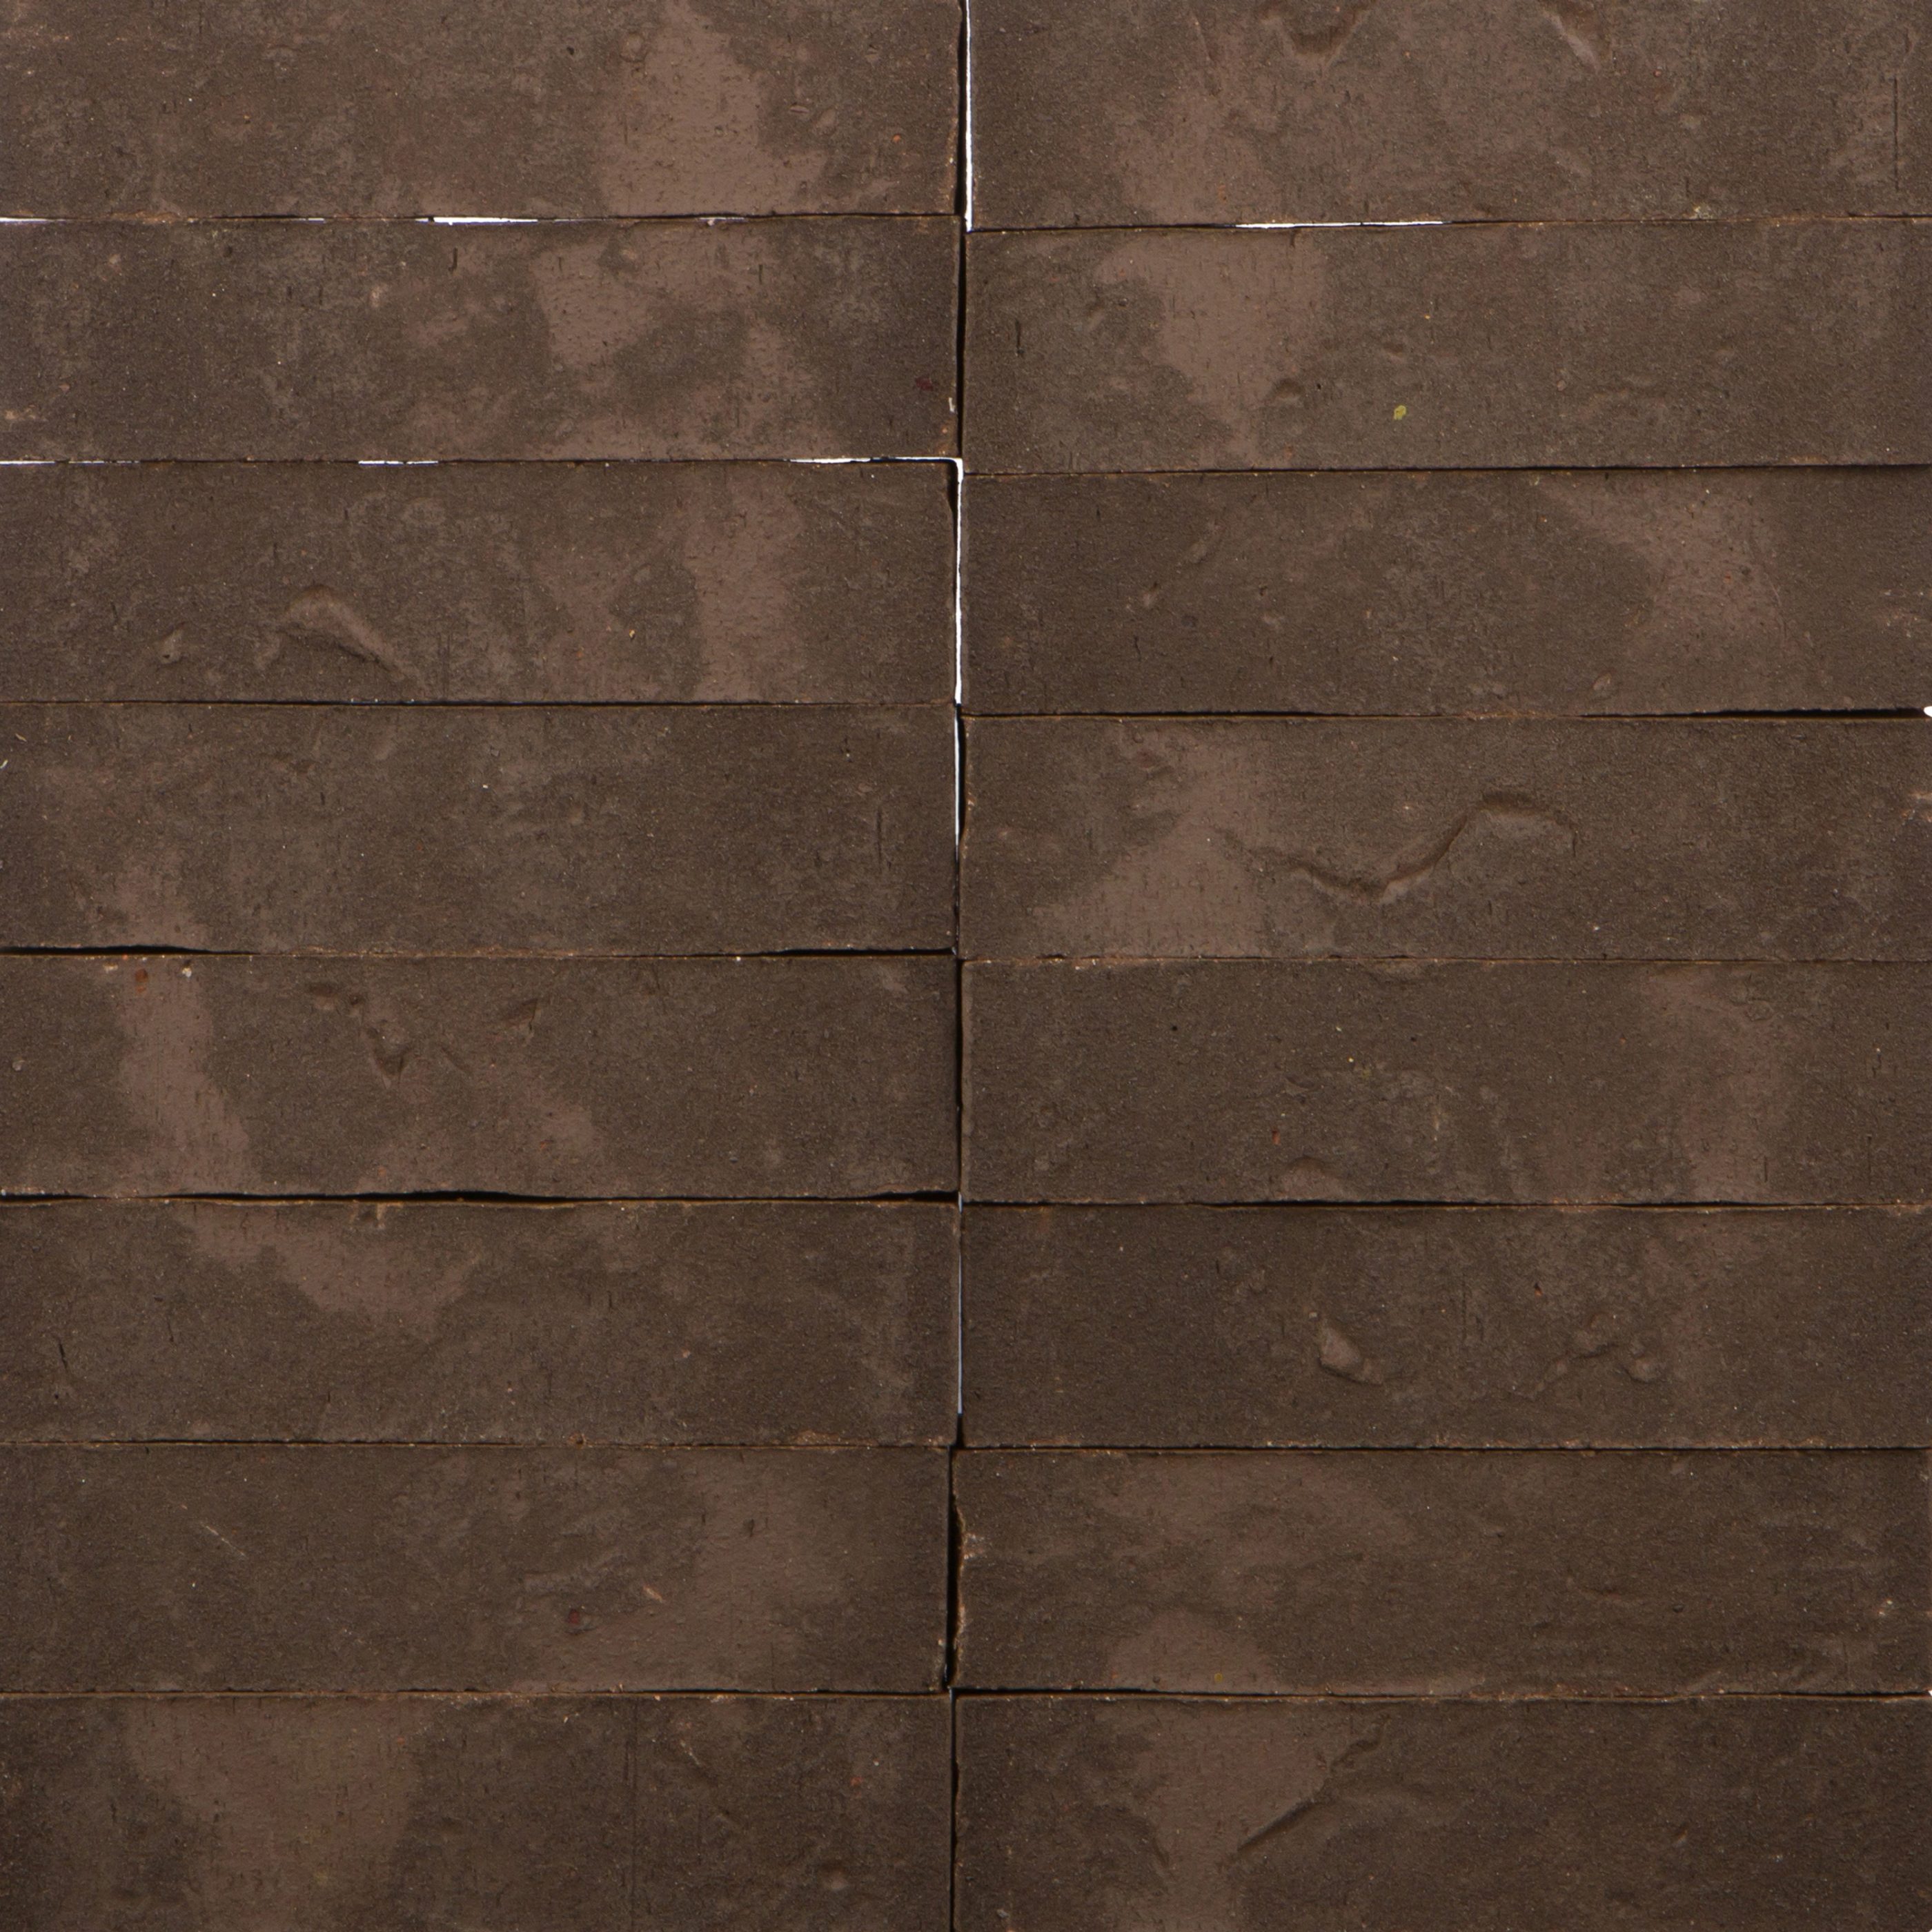 Клинкерный кирпич TercaOslo Nordic Klinker коричневый пестрый, с песком